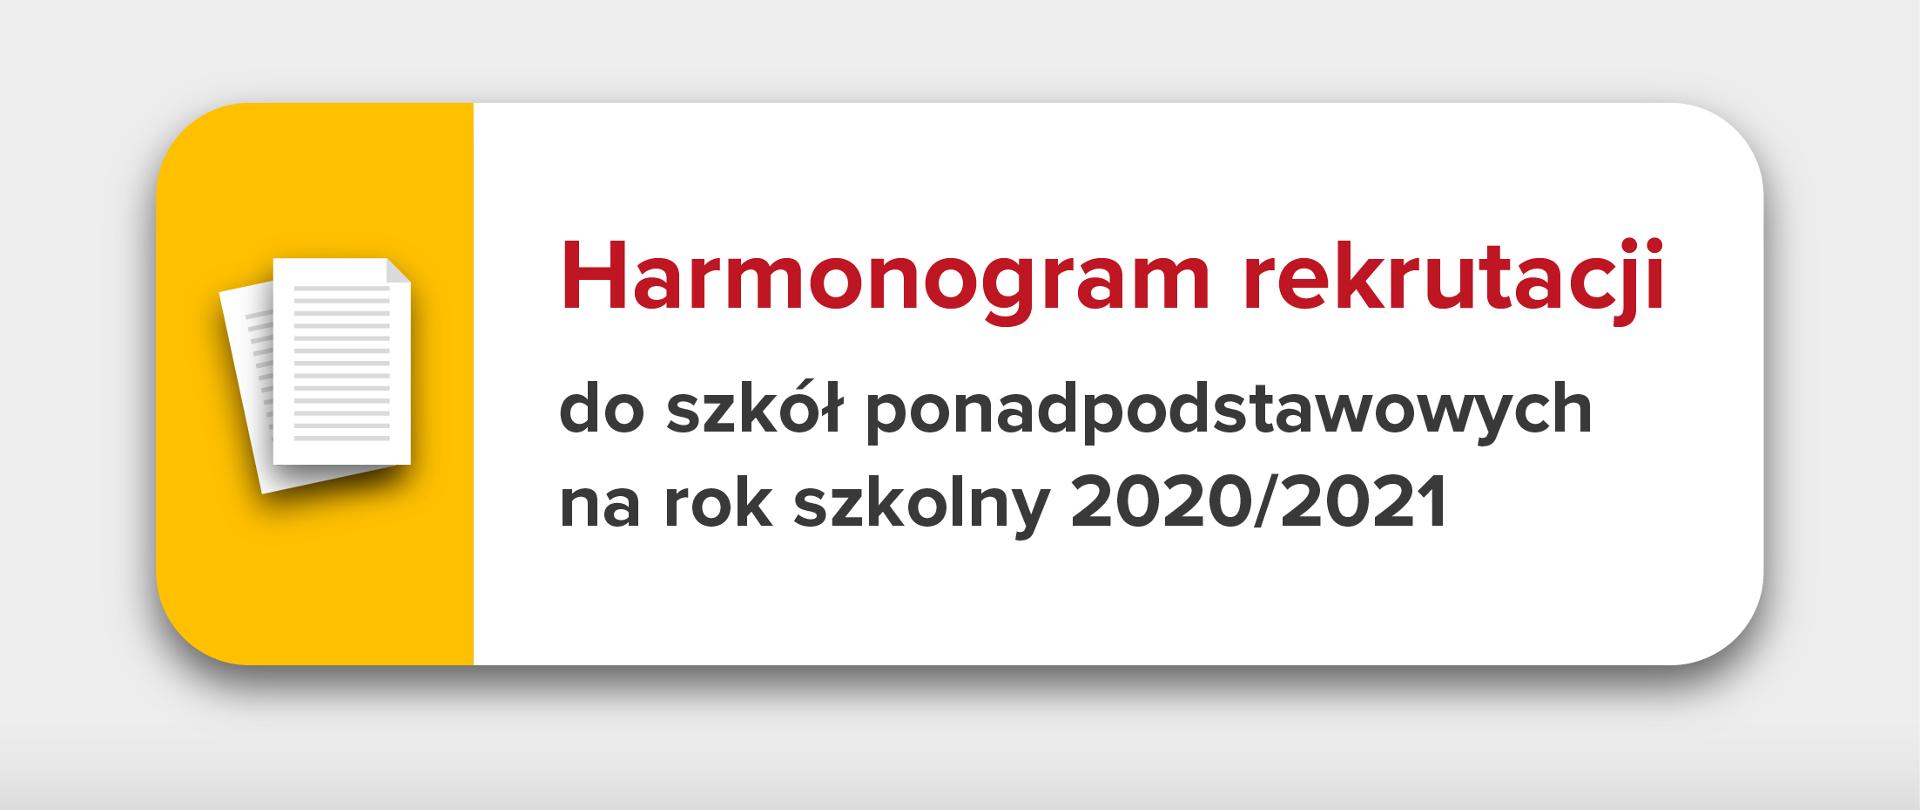 Harmonogram rekrutacji do szkół ponadpodstawowych na rok szkolny 2020/2021